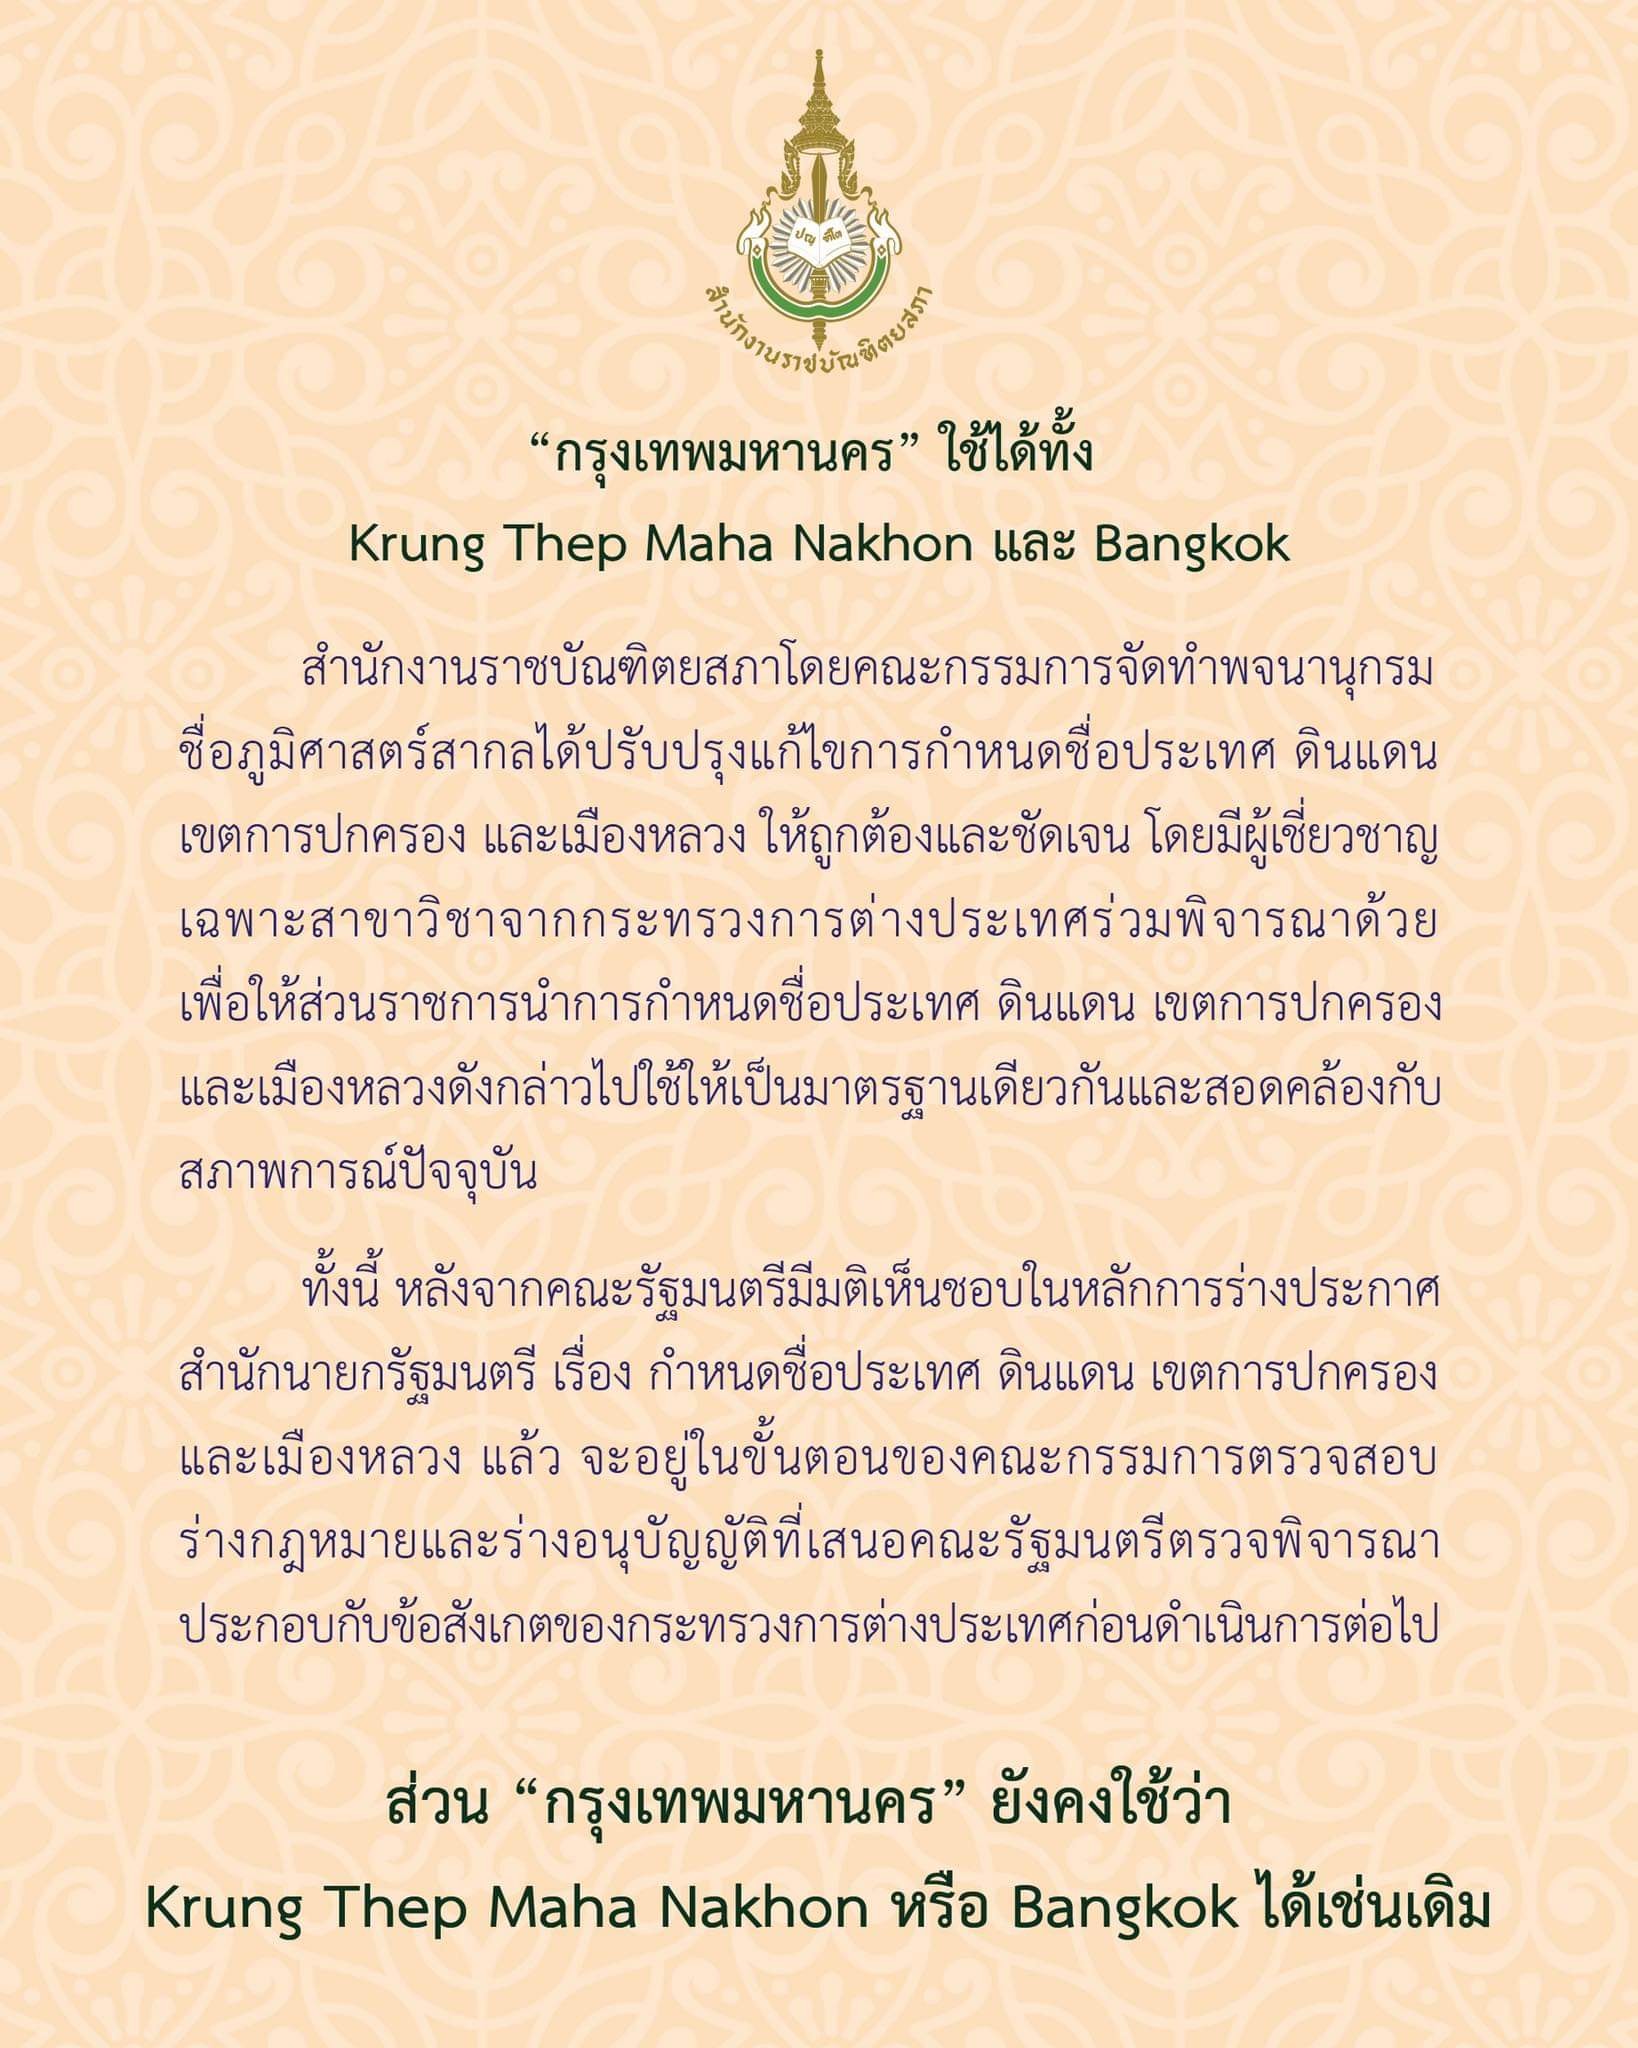 ดราม่าชื่อเหมืองหลวง ราชบัณฑิตเปลี่ยนชื่อ Bangkok เป็น Krung Thep Maha Nakhon